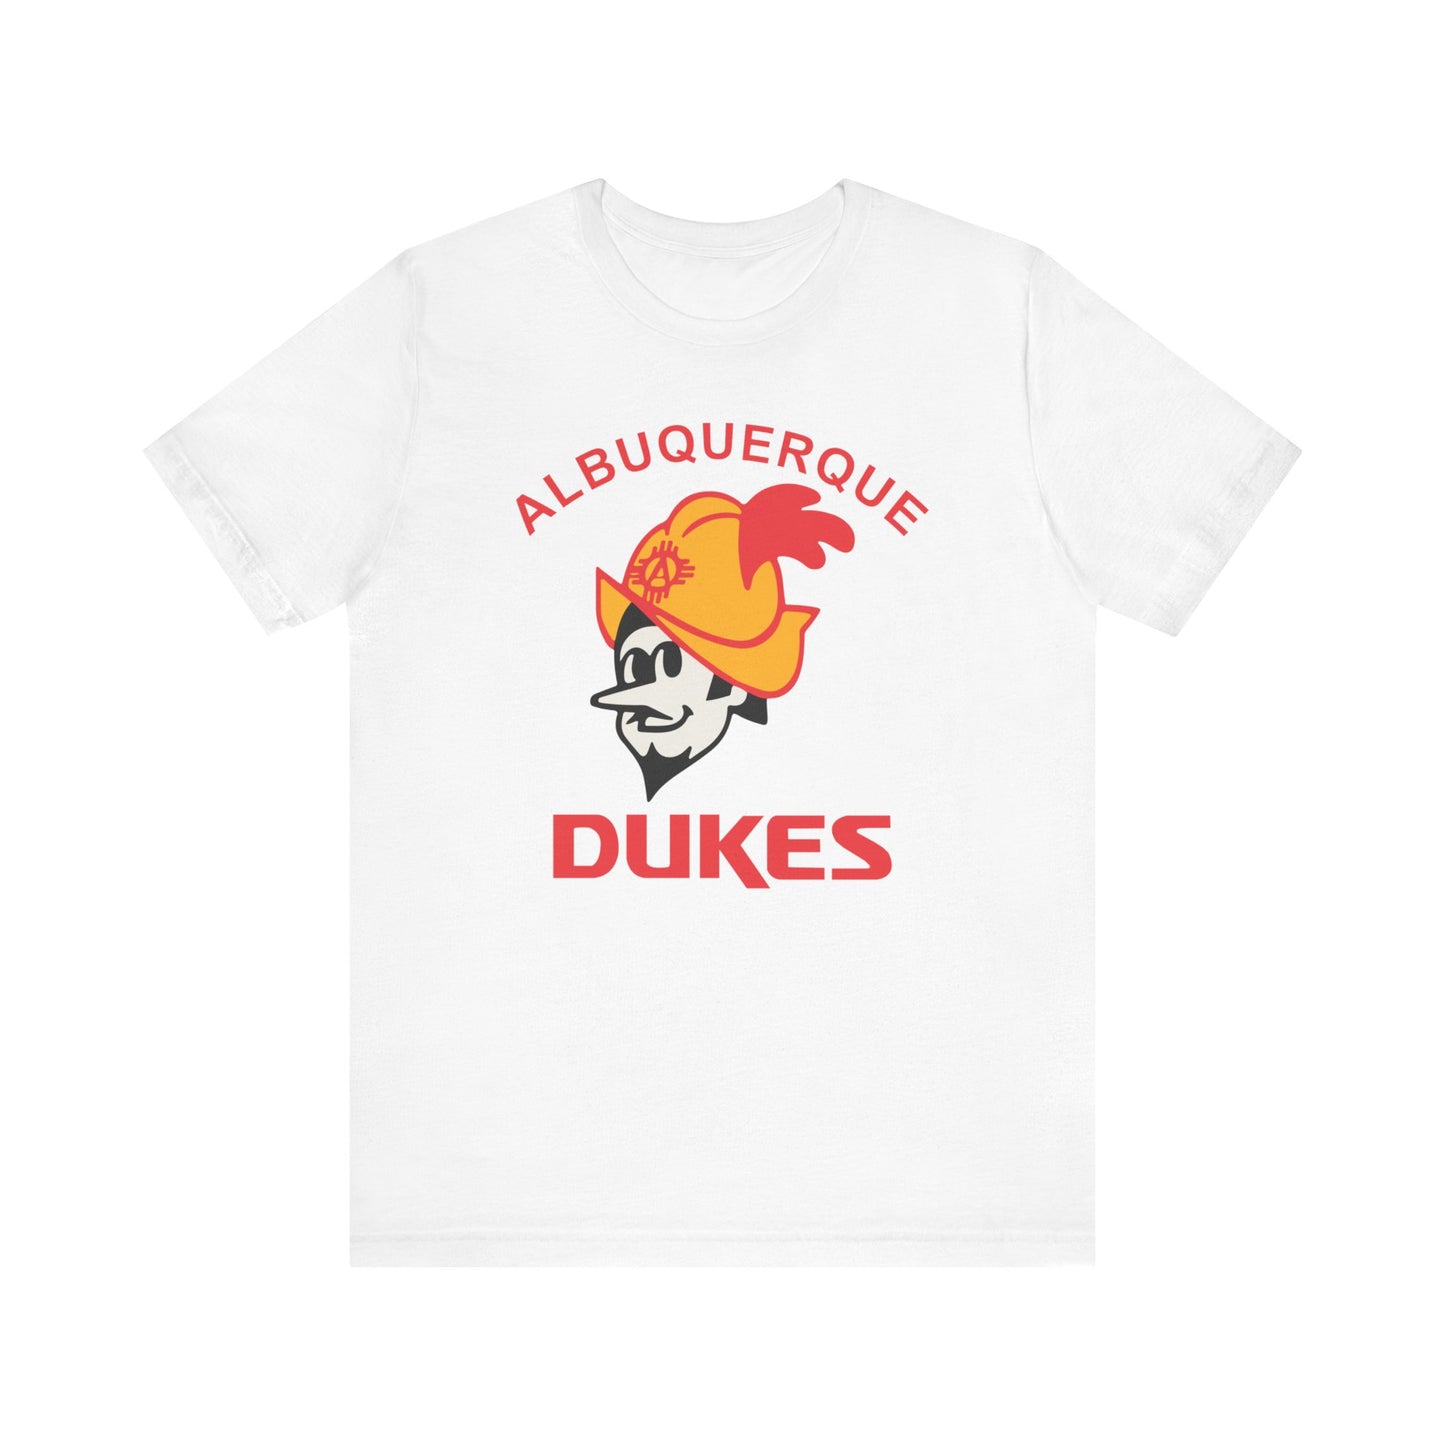 Albuquerque Dukes - Unisex T-Shirt